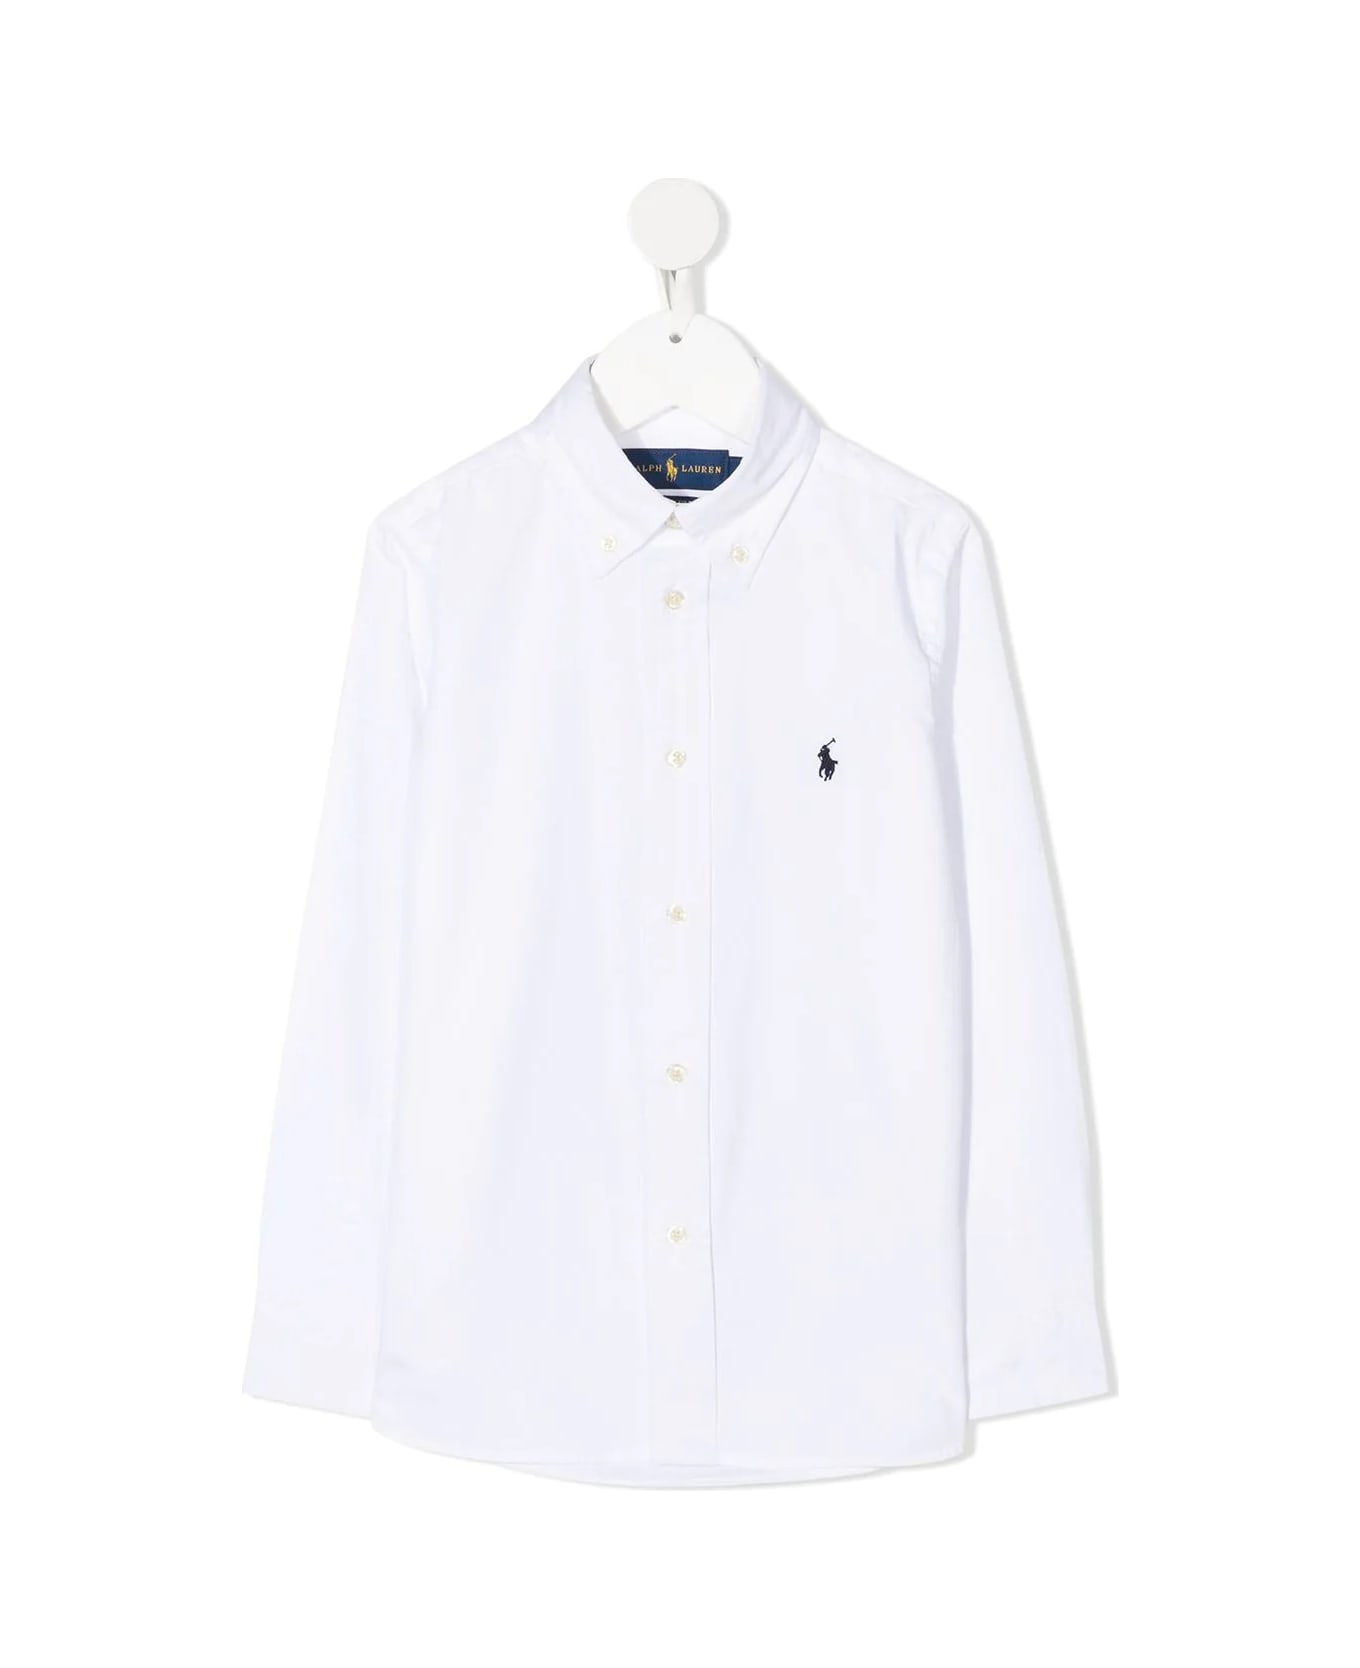 Polo Ralph Lauren White Slim-fit Oxford Shirt - White シャツ